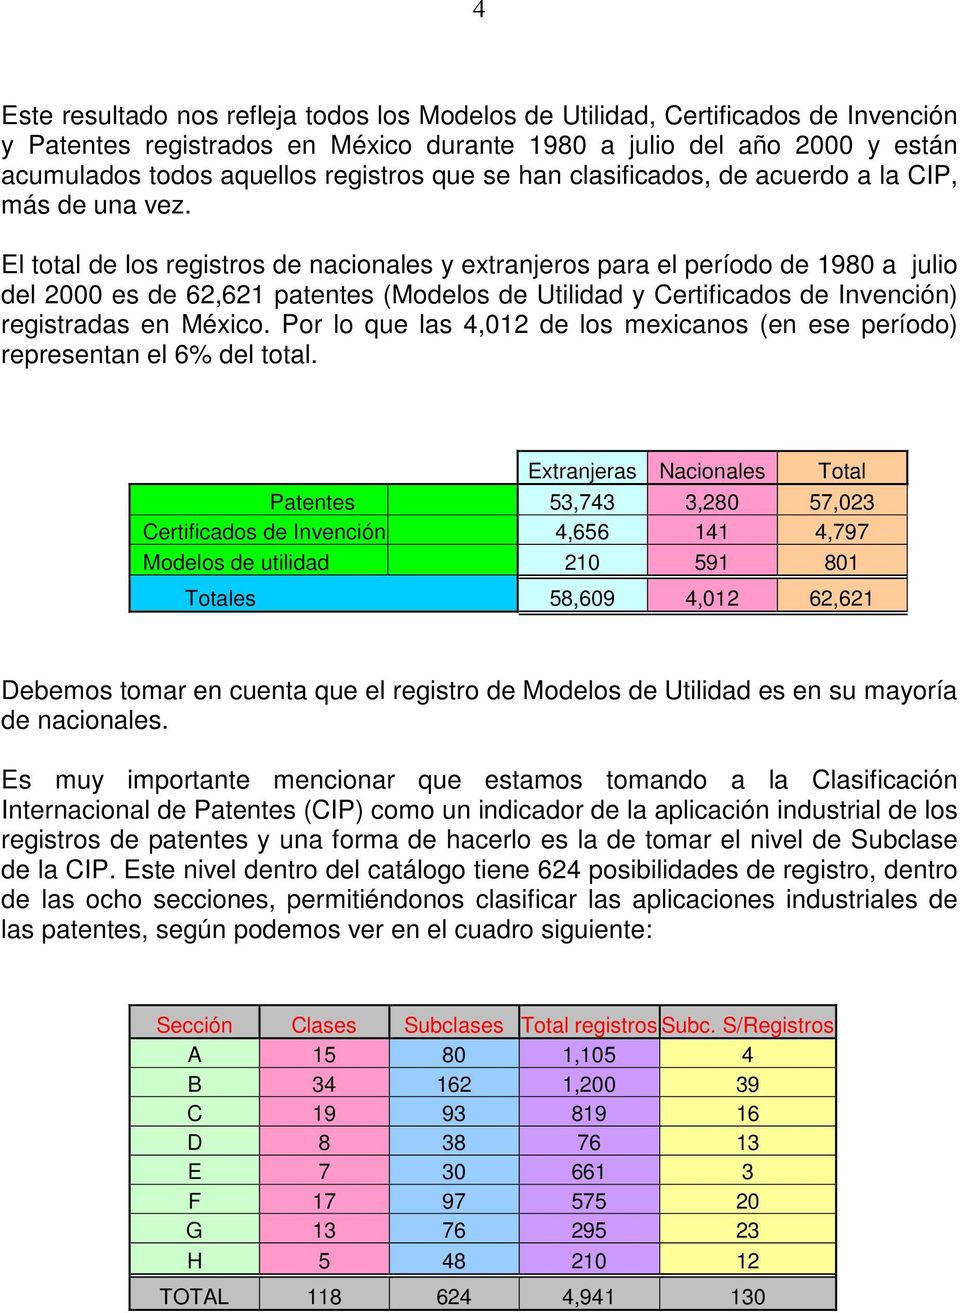 El total de los registros de nacionales y extranjeros para el período de 1980 a julio del 2000 es de 62,621 patentes (Modelos de Utilidad y Certificados de Invención) registradas en México.